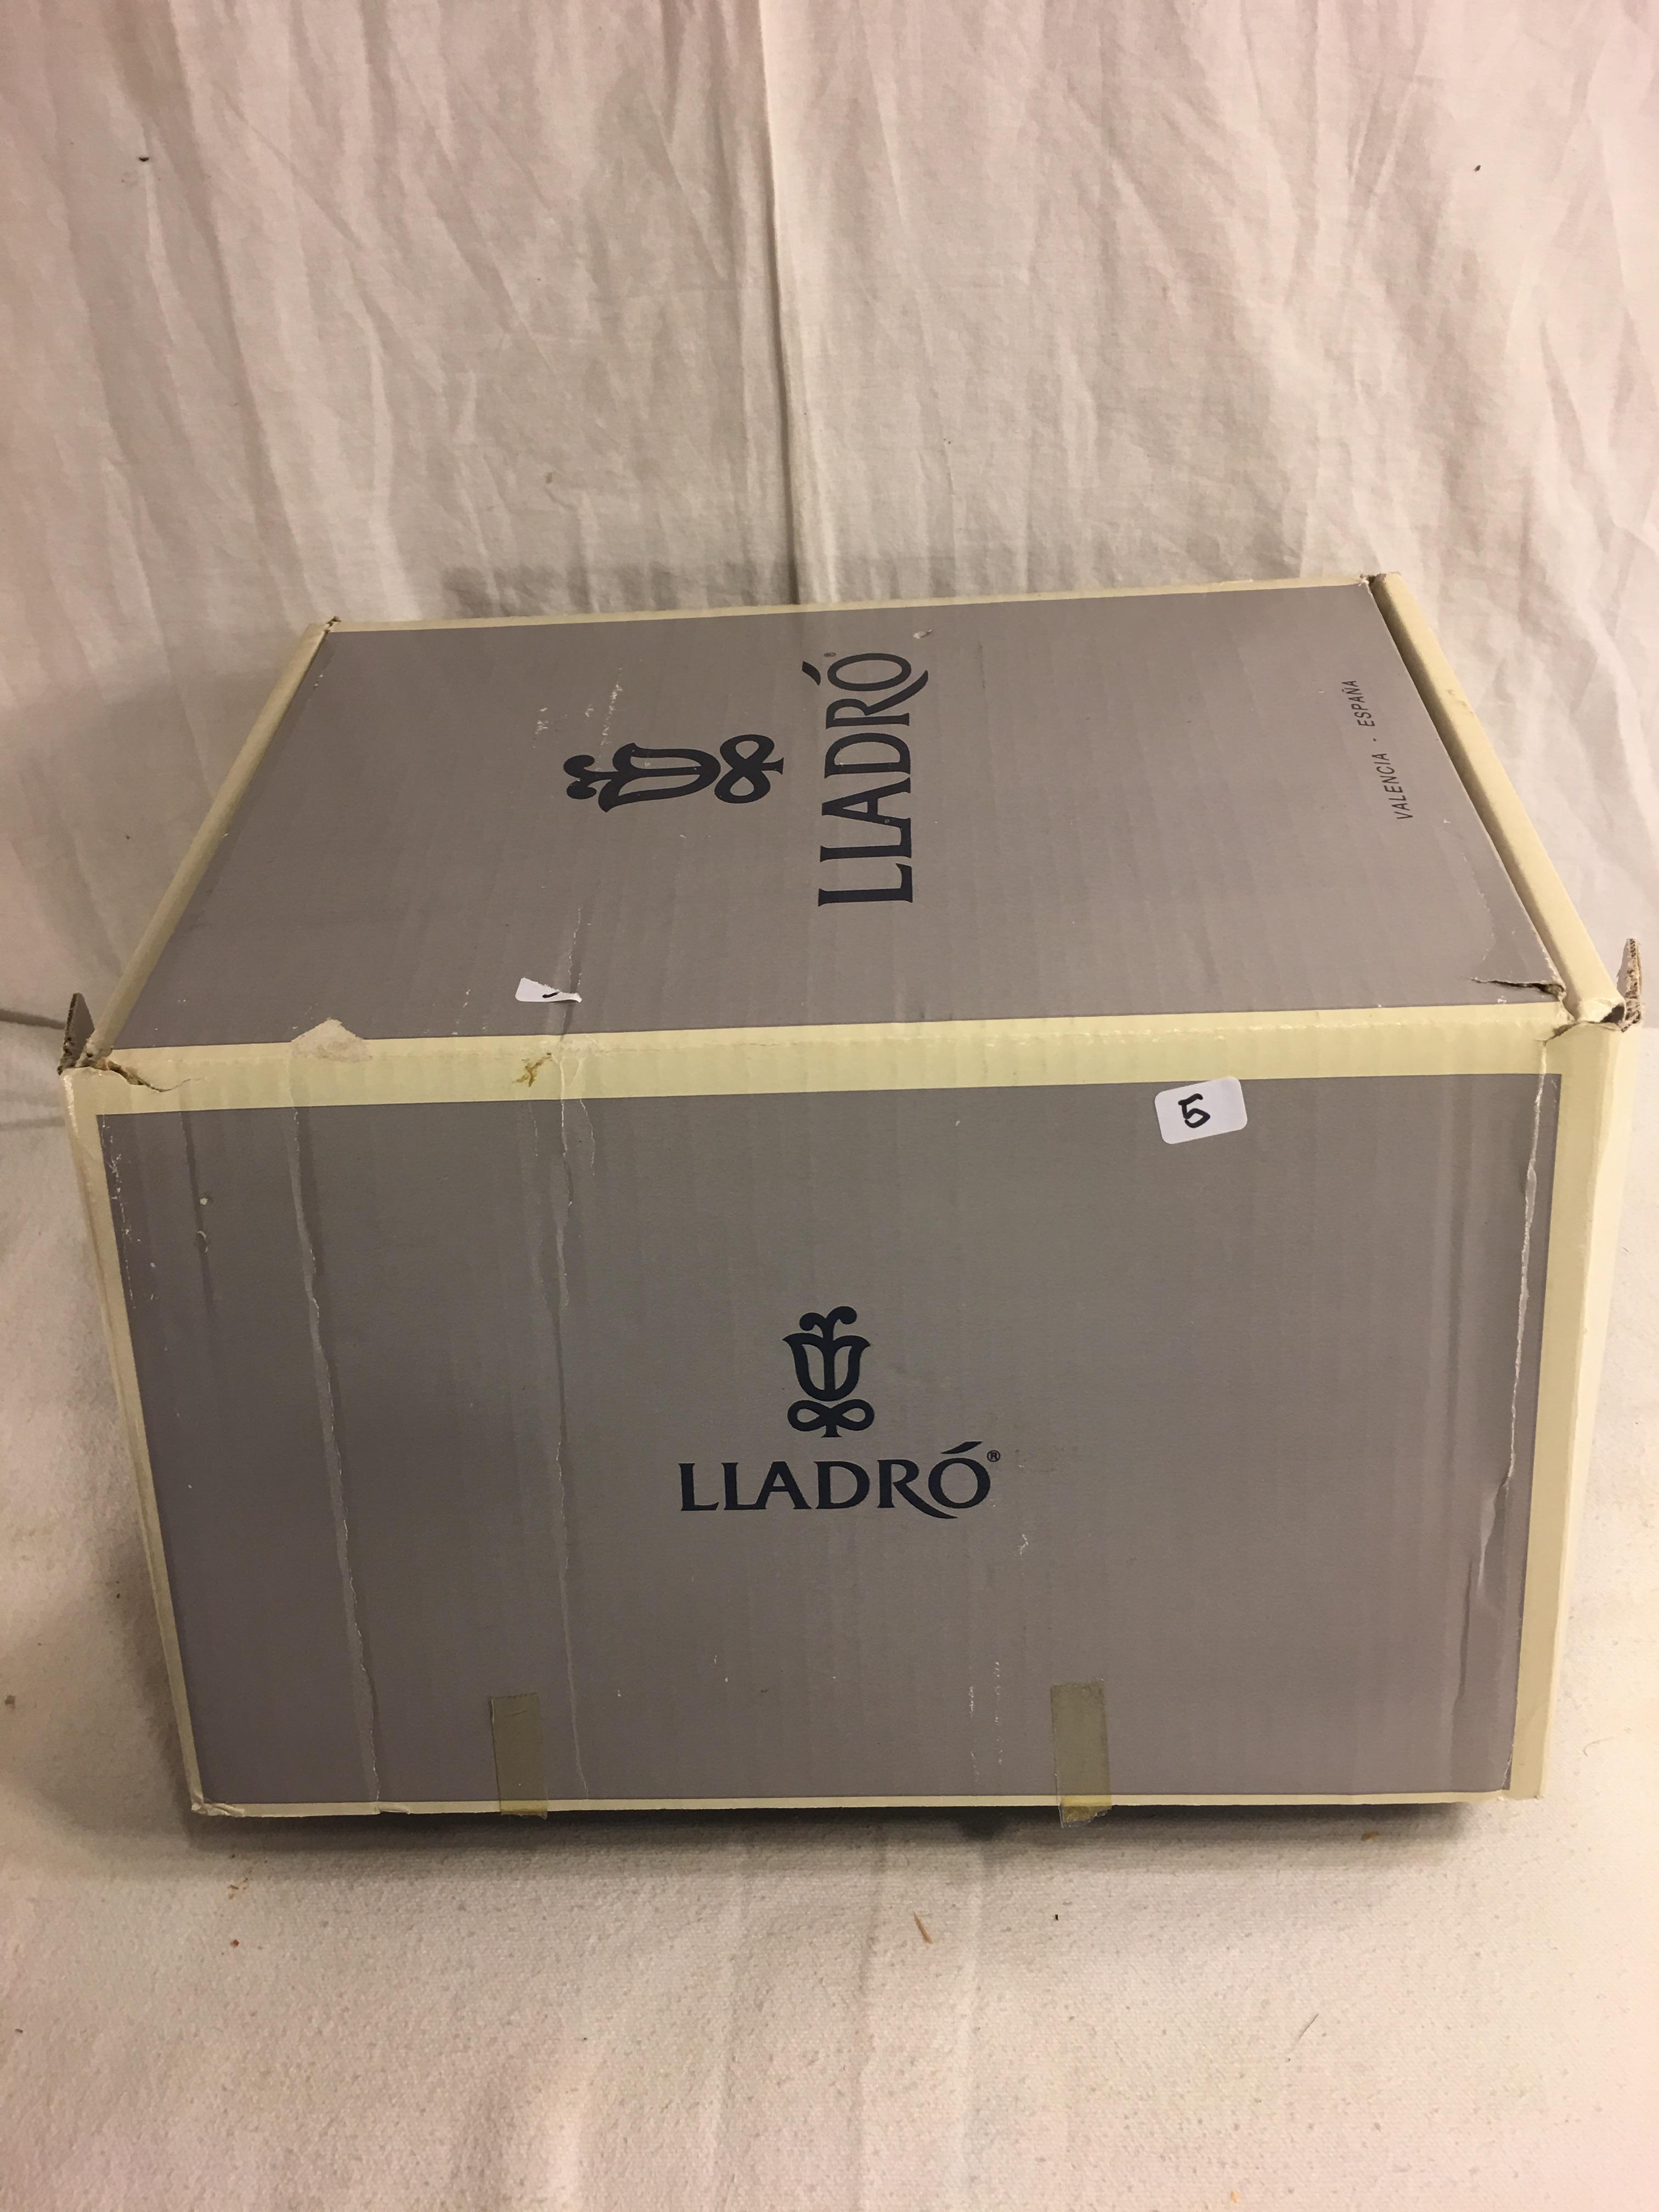 Colletor Lladro Father's Day #5584 Figurine box: 8"x9"